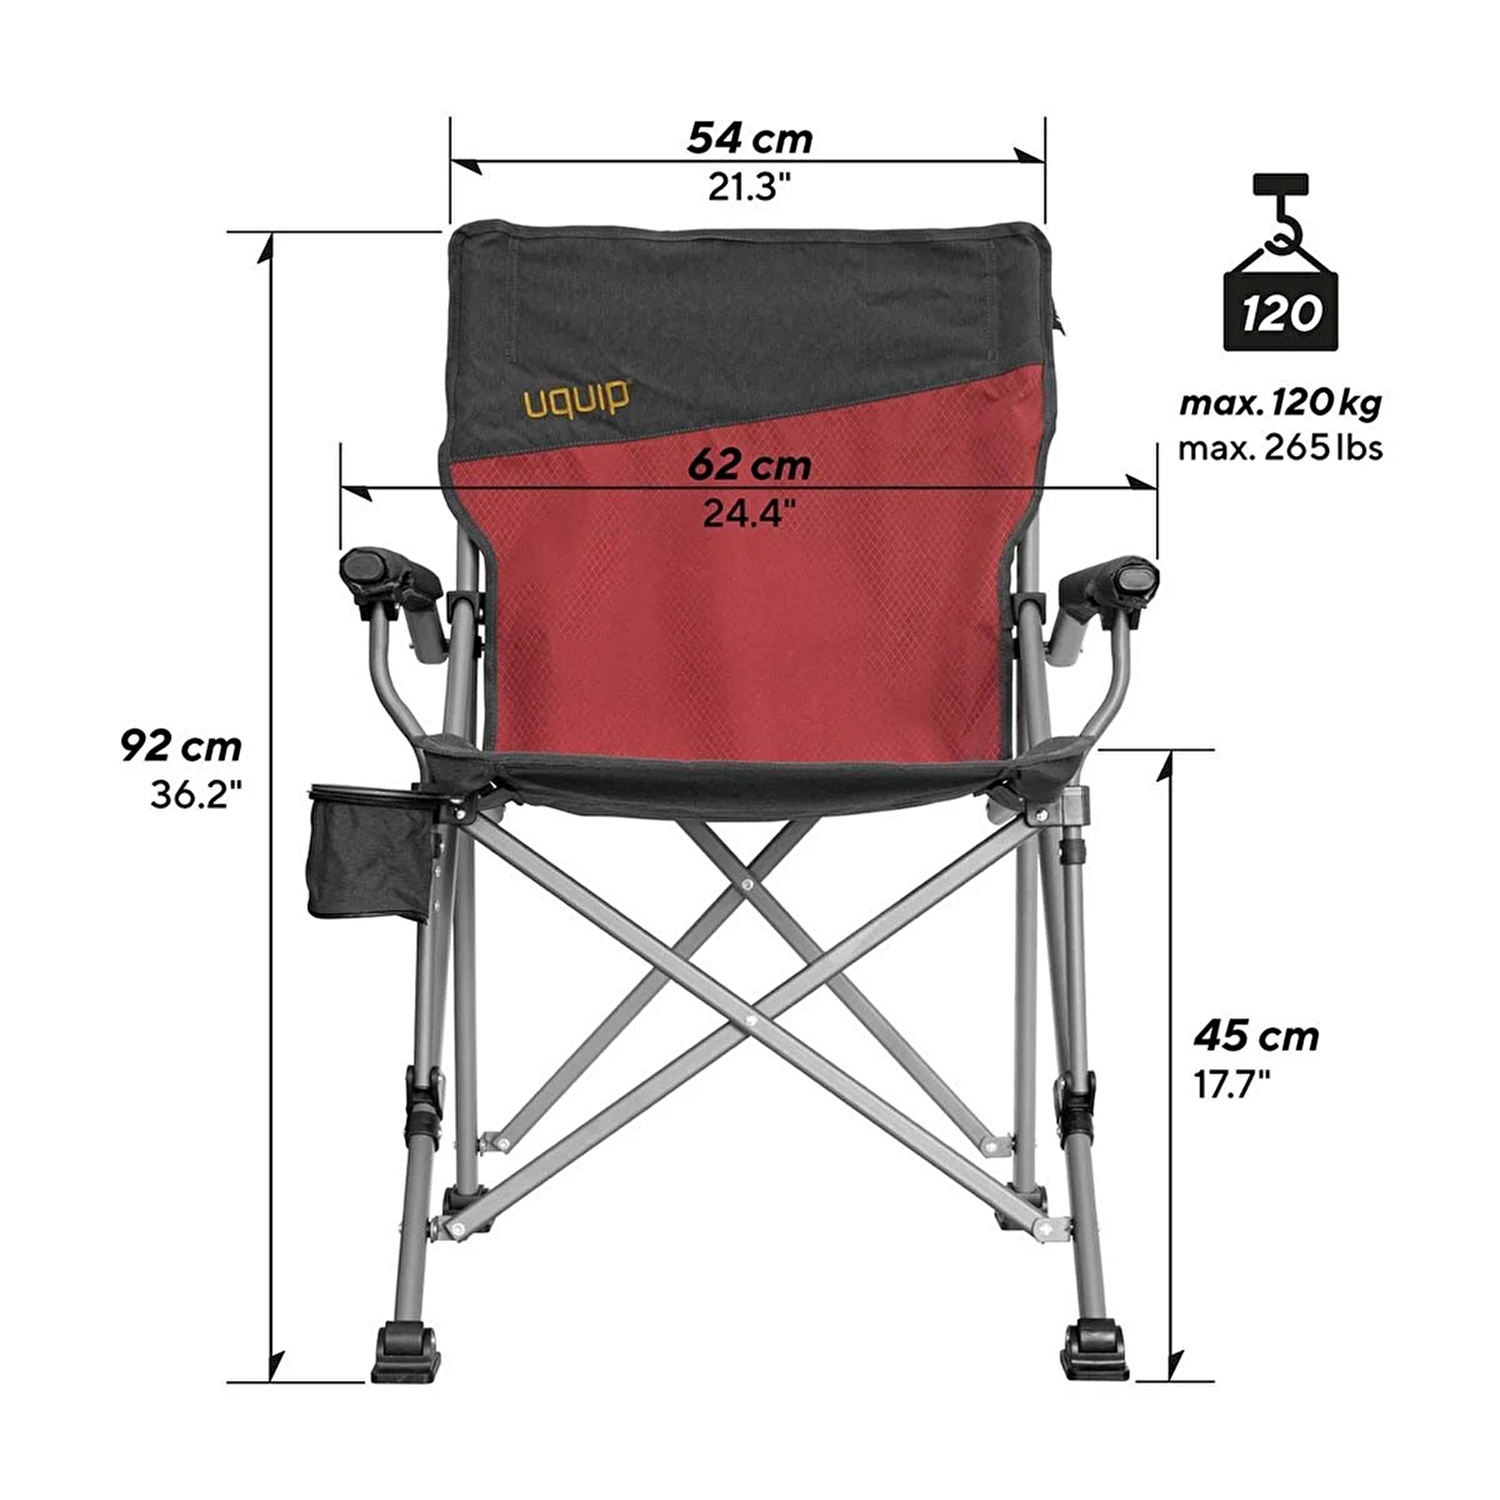 Uquip Roxy Yüksek Konforlu ve Takviyeli Katlanır Kamp Sandalyesi